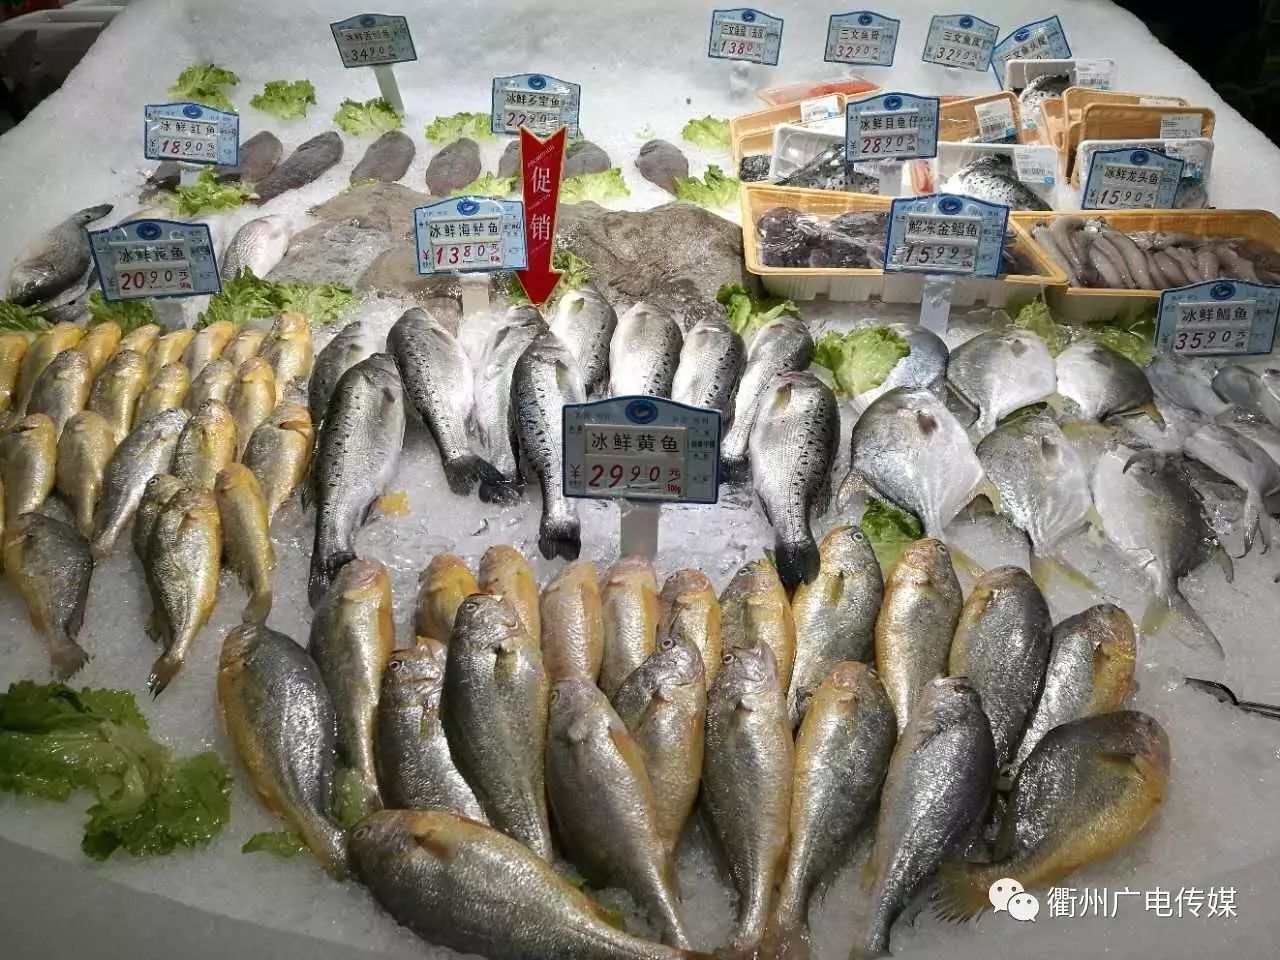 大润发超市依然有冰鲜海鲜和冰冻海鲜售卖,在浙江地区禁止销售的鱼类